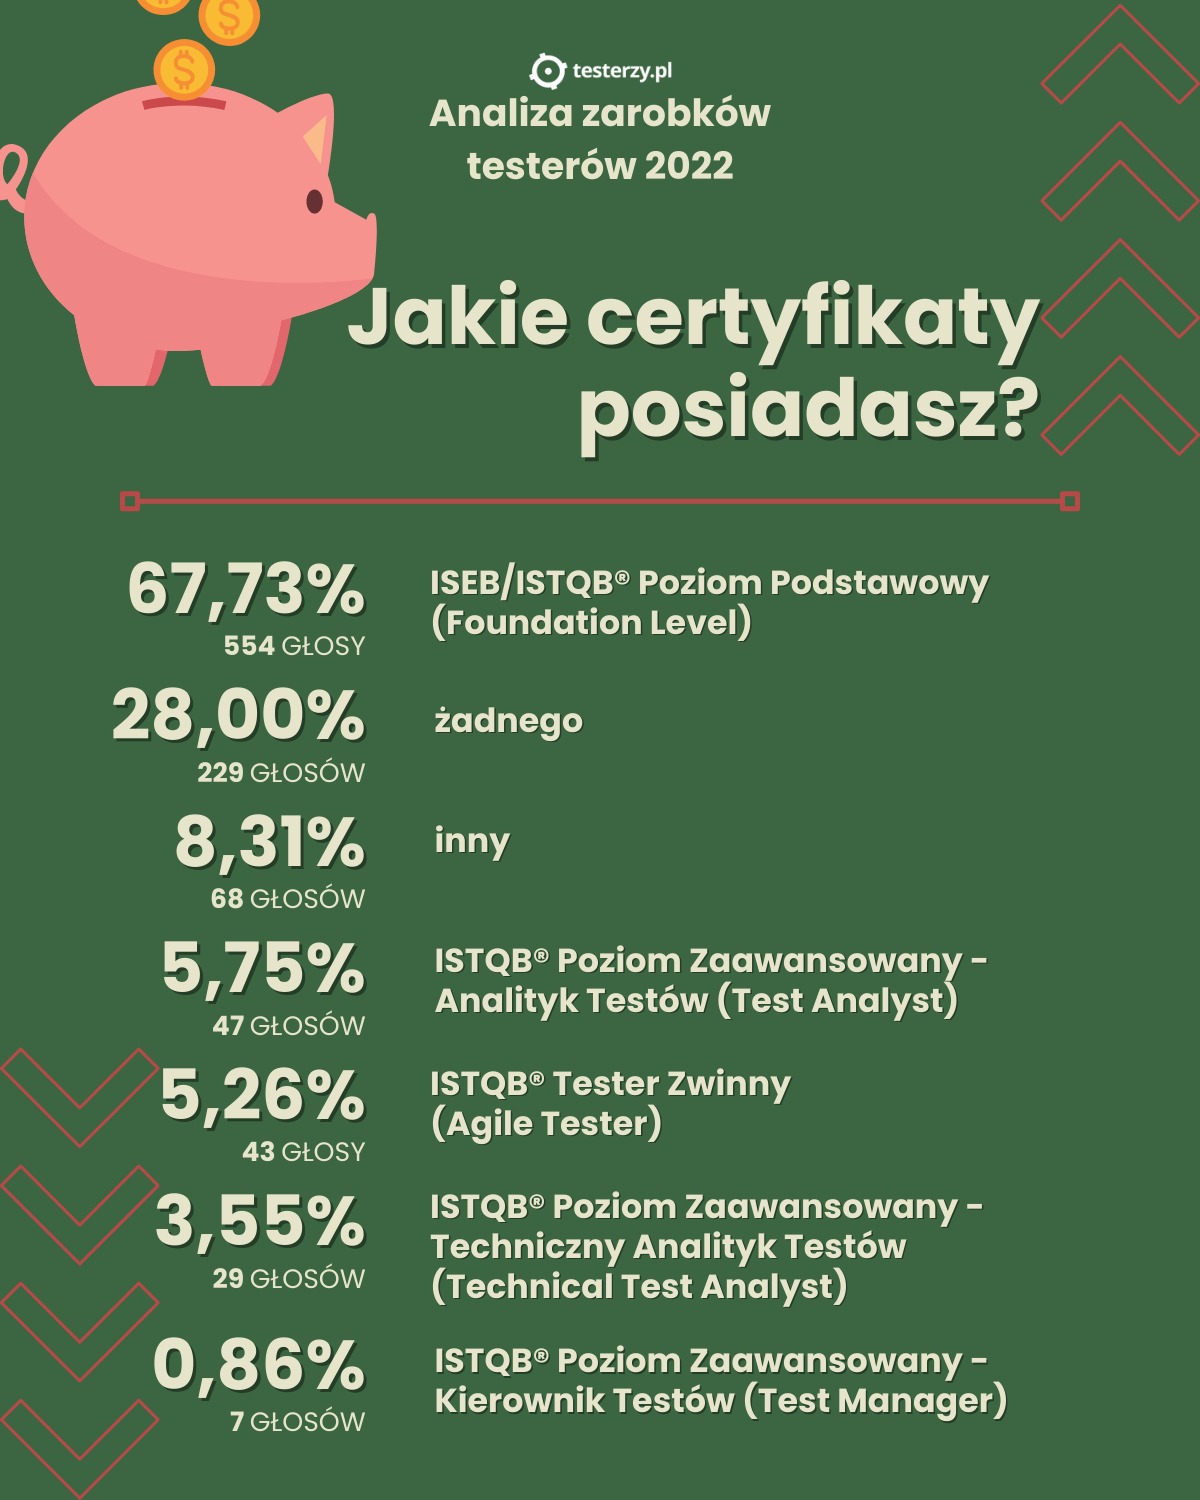 analiza-zarobkow-2022-certyfikaty.jpg